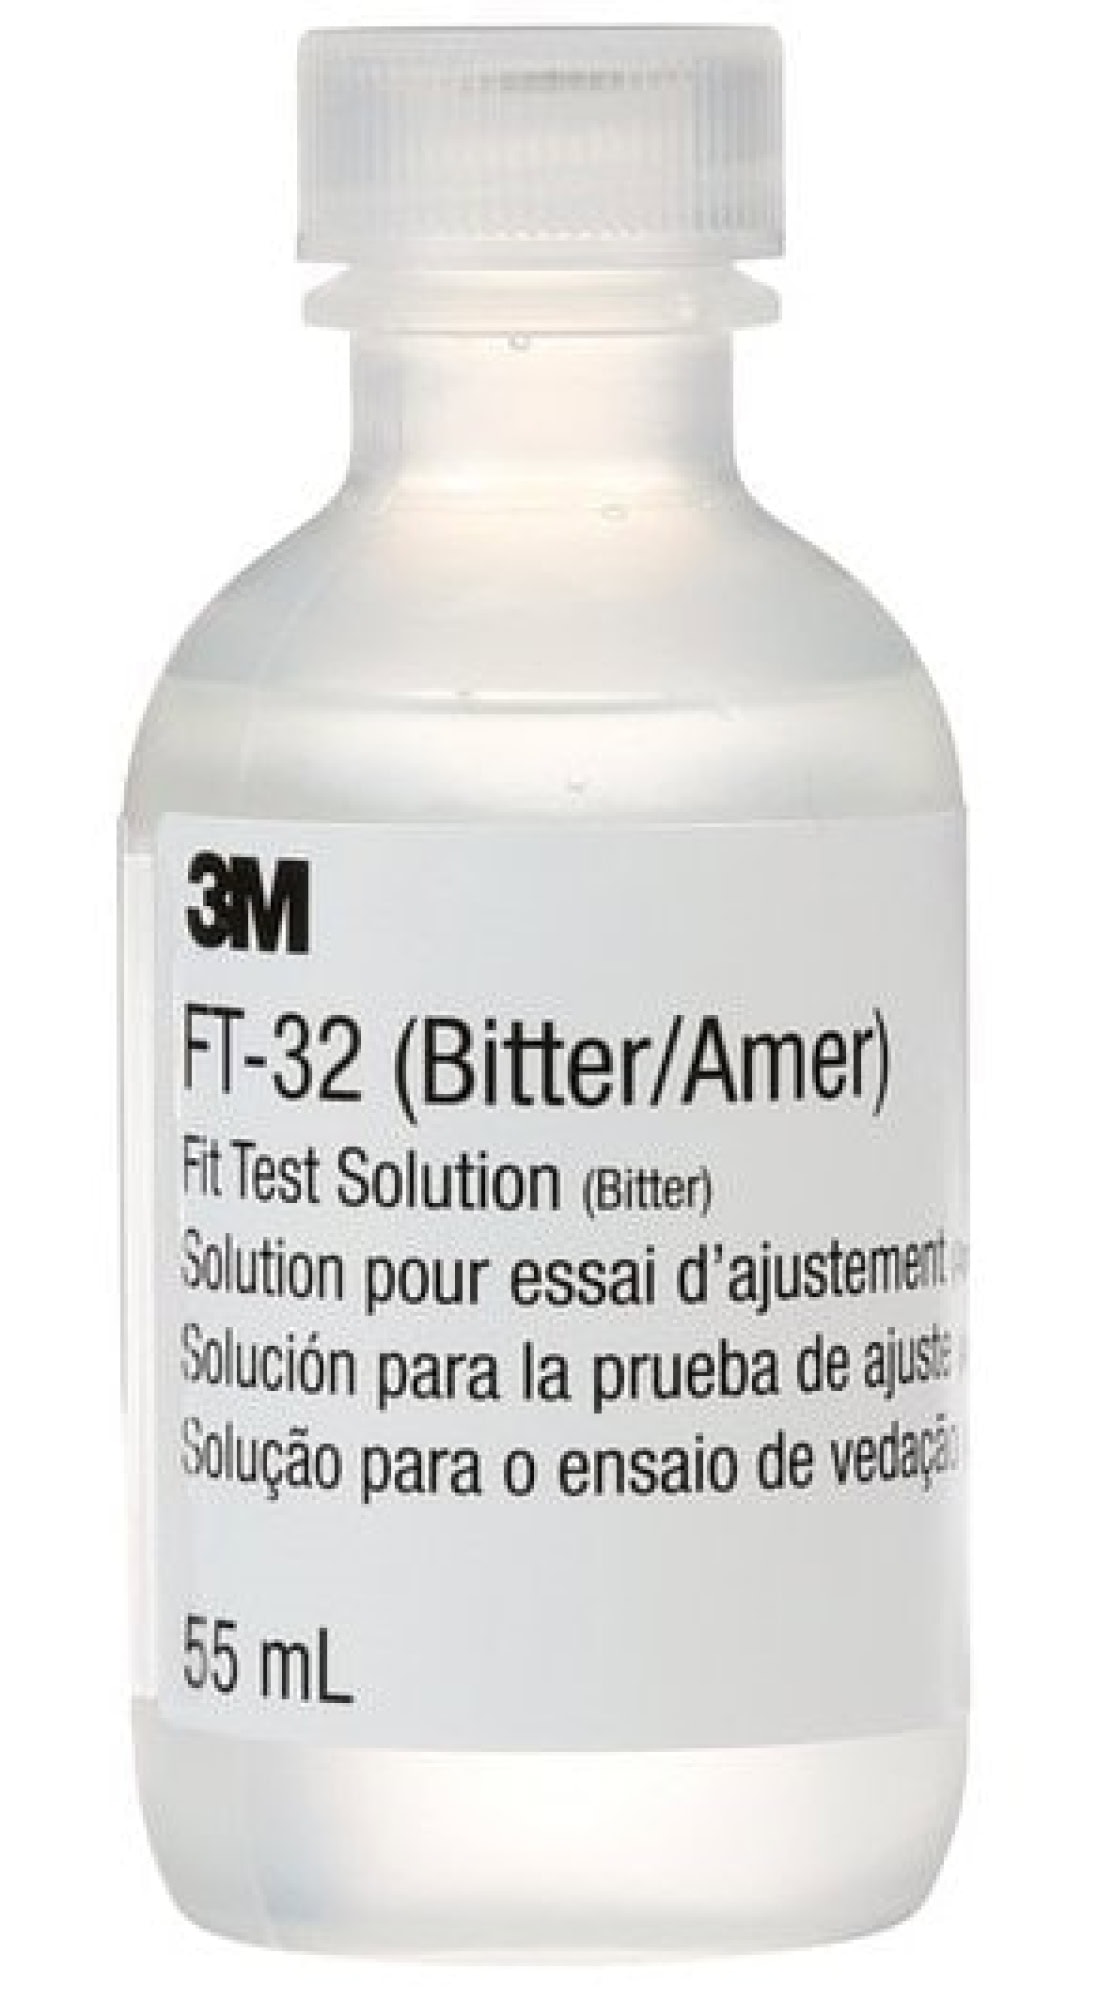 3M™ Fit Test FT-32, Bitter, 55 ml, Lösung für Dichtsitzprüfung